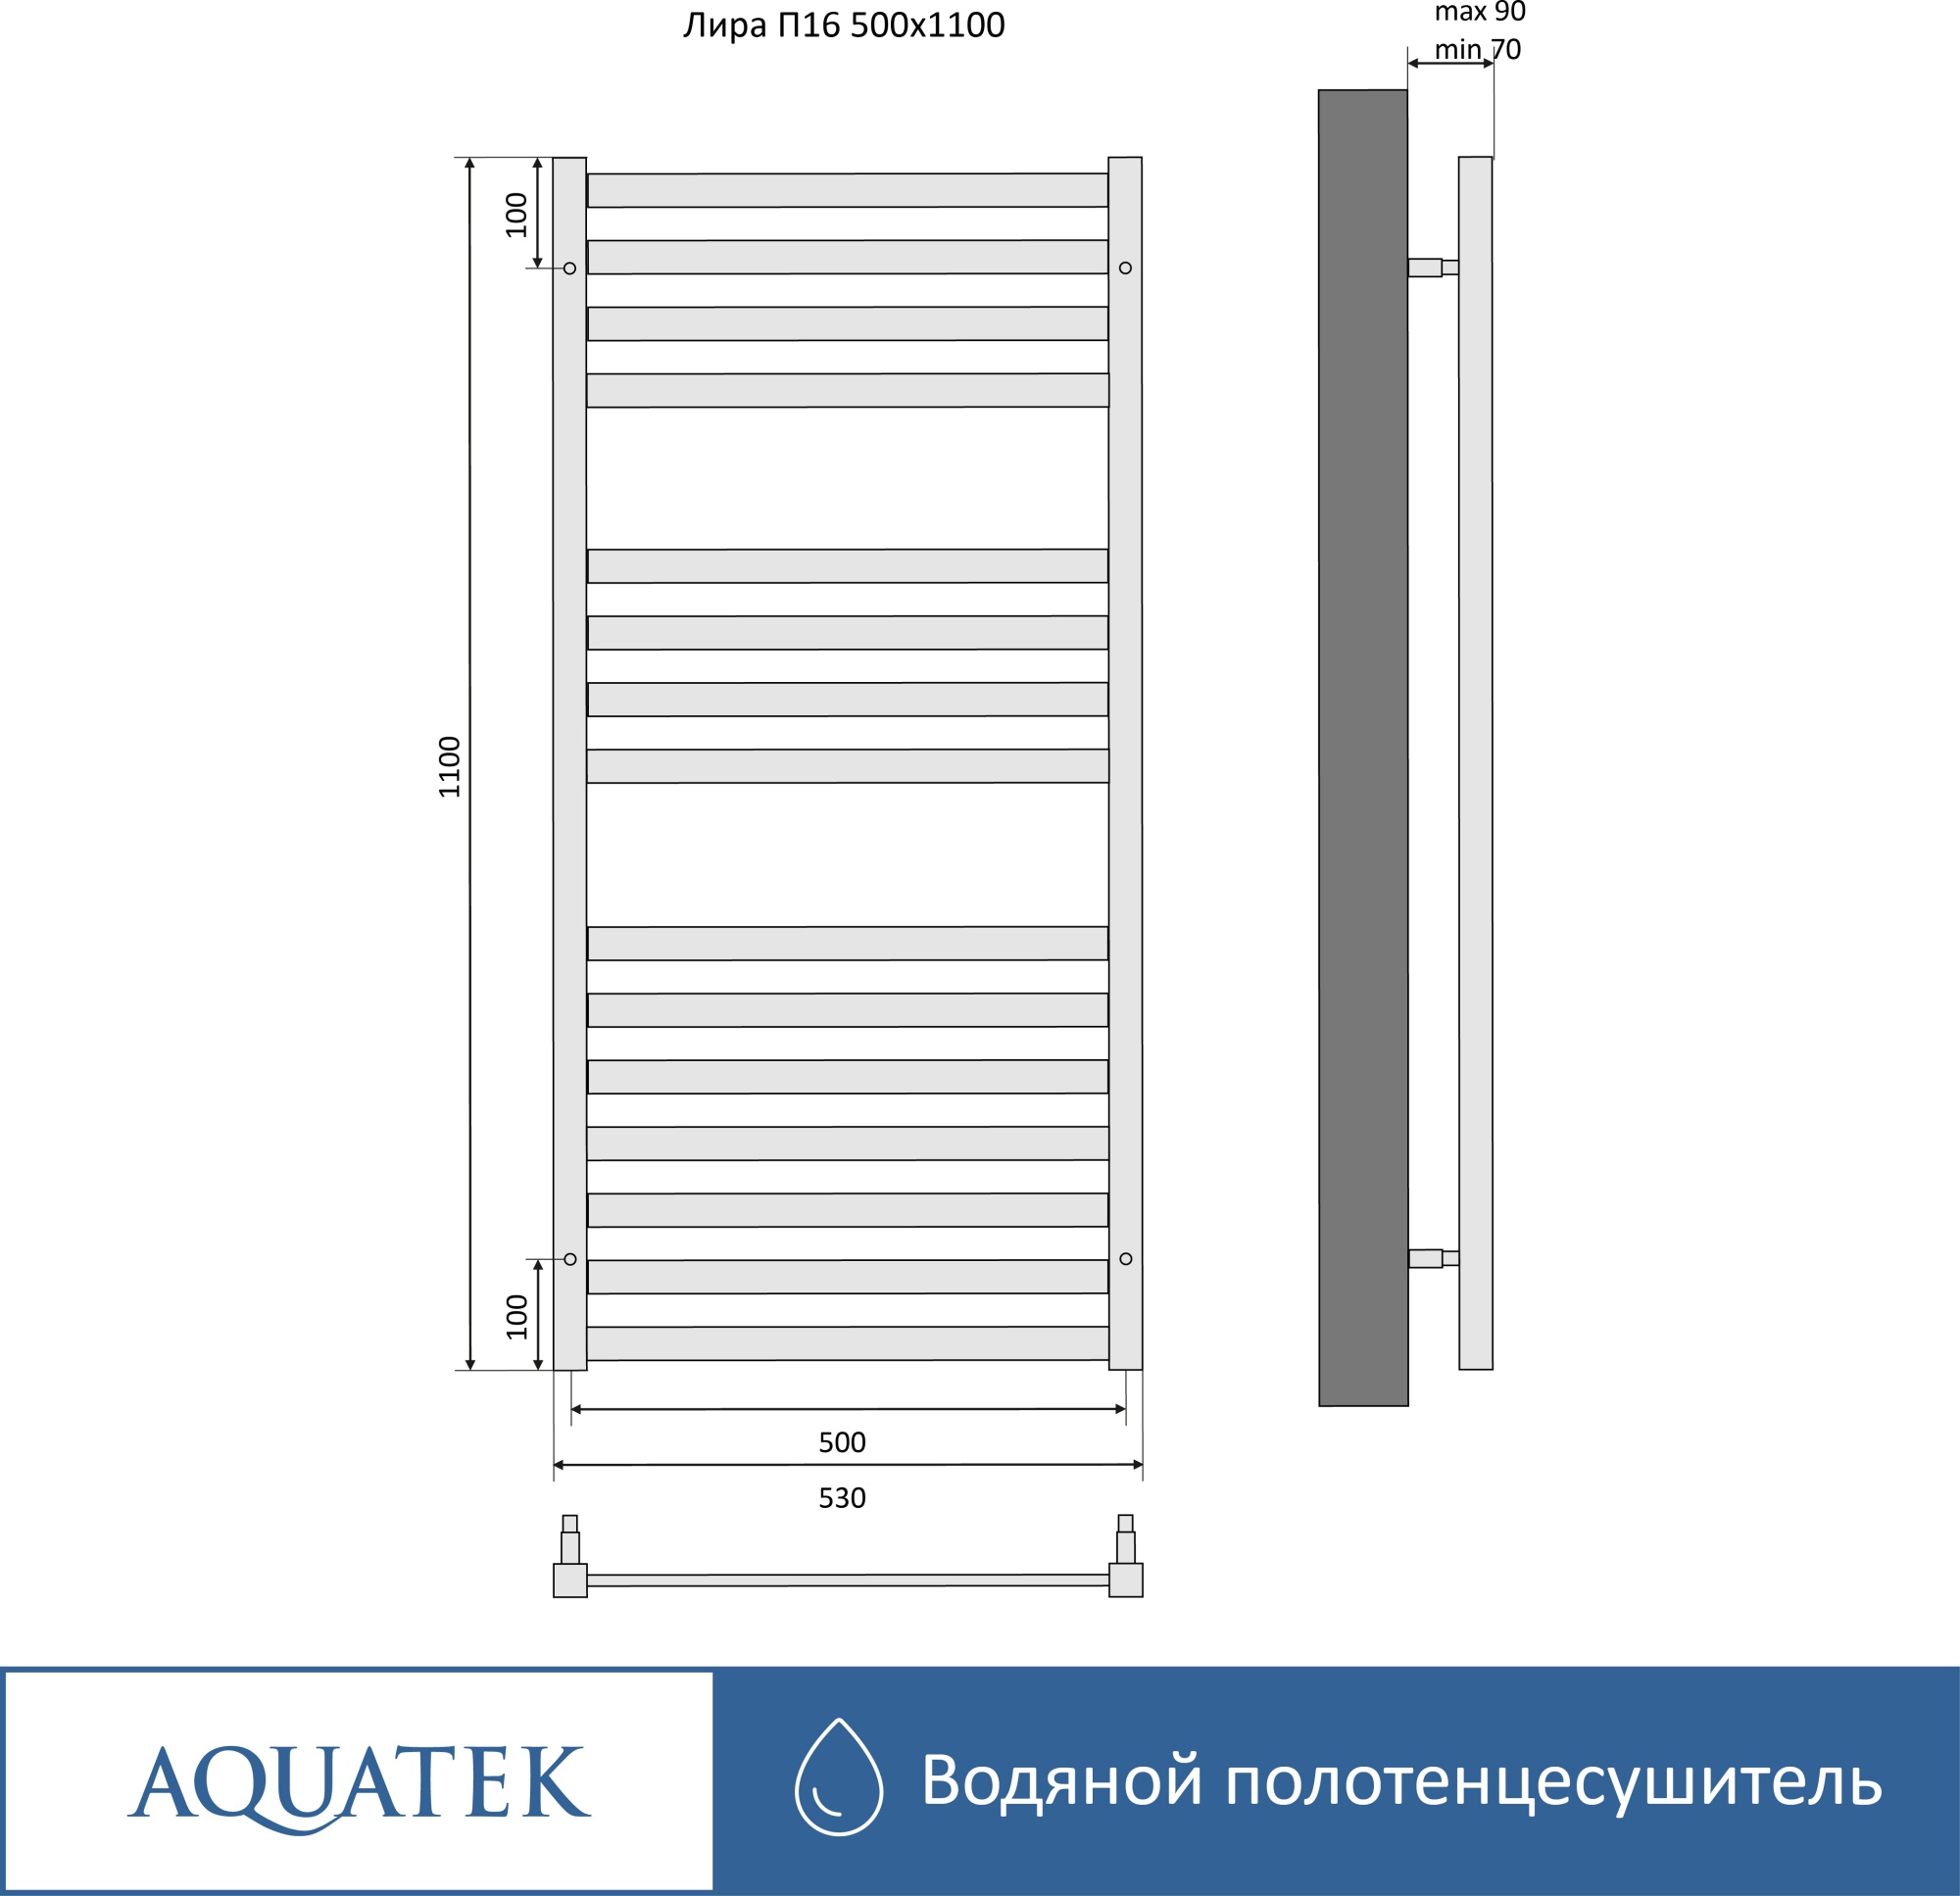 Полотенцесушитель водяной Aquatek Лира П16 50x110 AQ KP1610CH